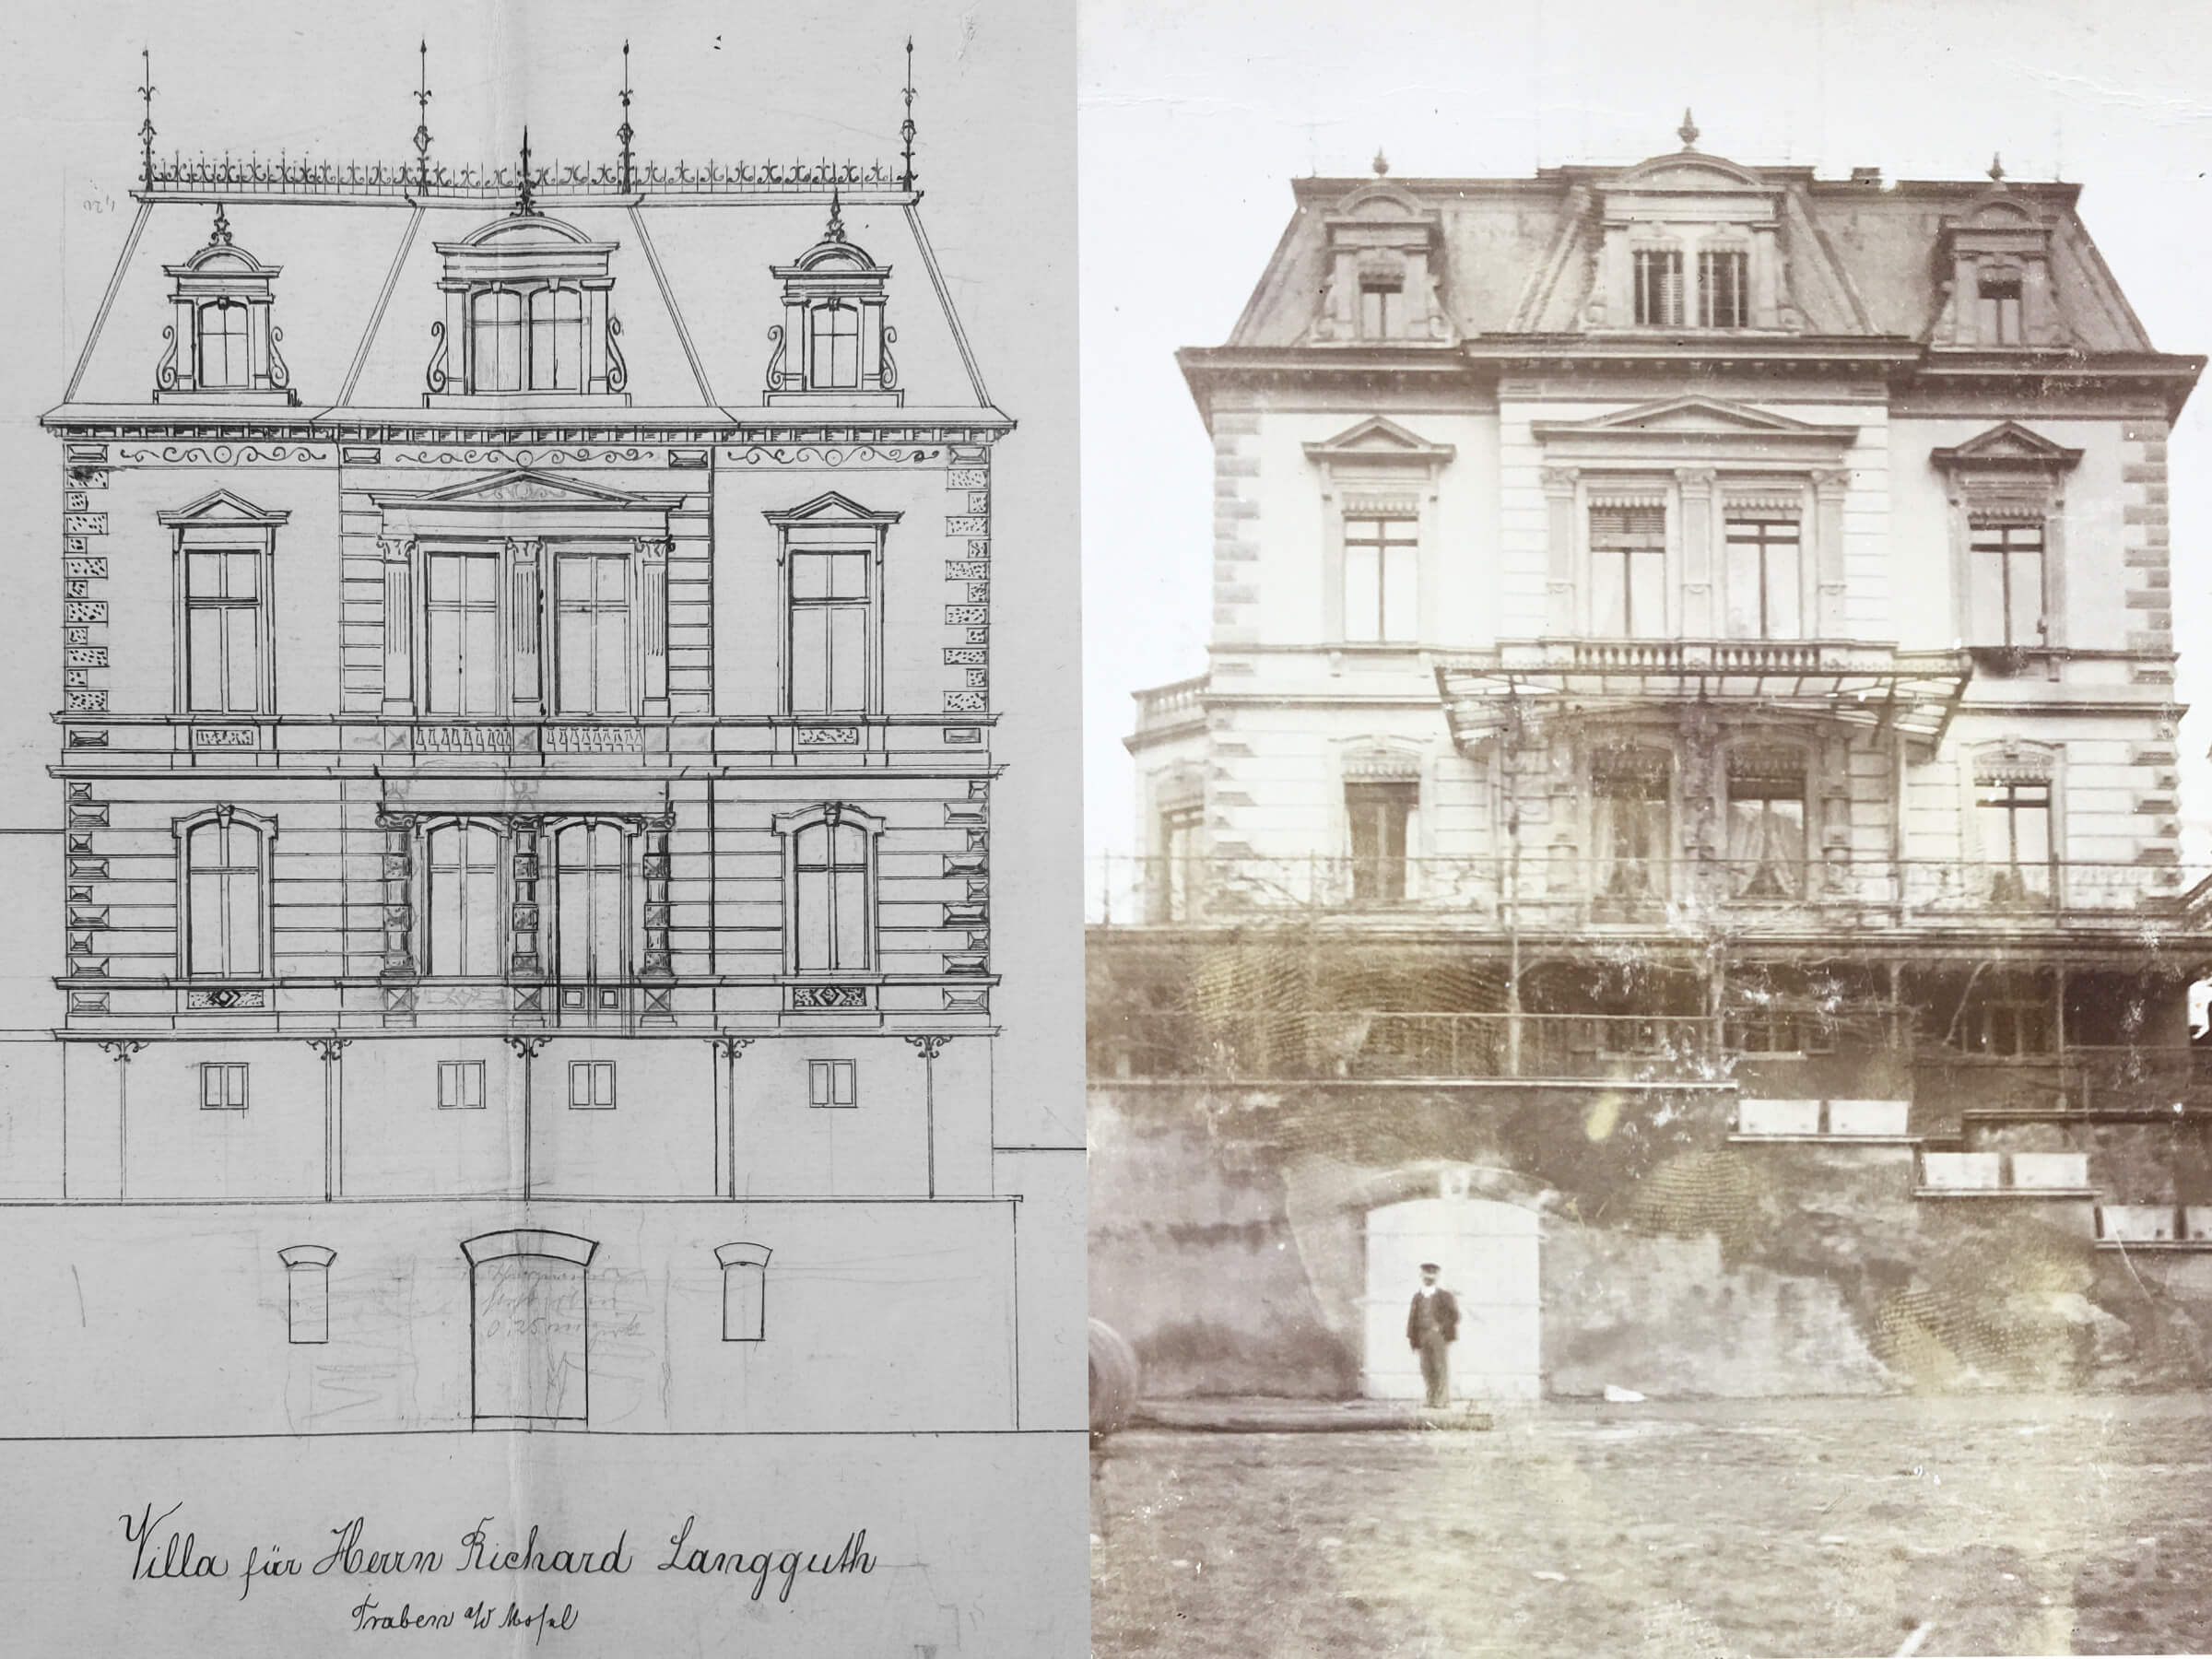 1890 wurde die Villa von dem Weinhändler Richard Langguth direkt am Moselufer in Traben-Trarbach erbaut